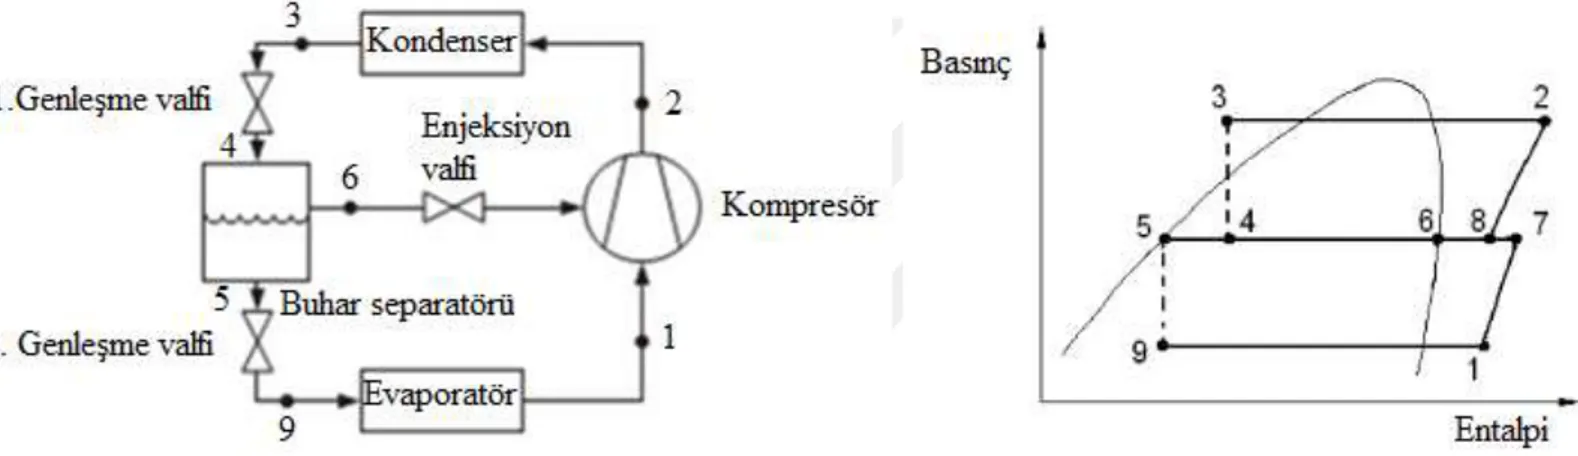 Şekil 3.1.‘de iki kademeli buhar separatörlü enjeksiyon sisteminin tesisat şeması   ve basınç-entalpi diyagramı görülmektedir